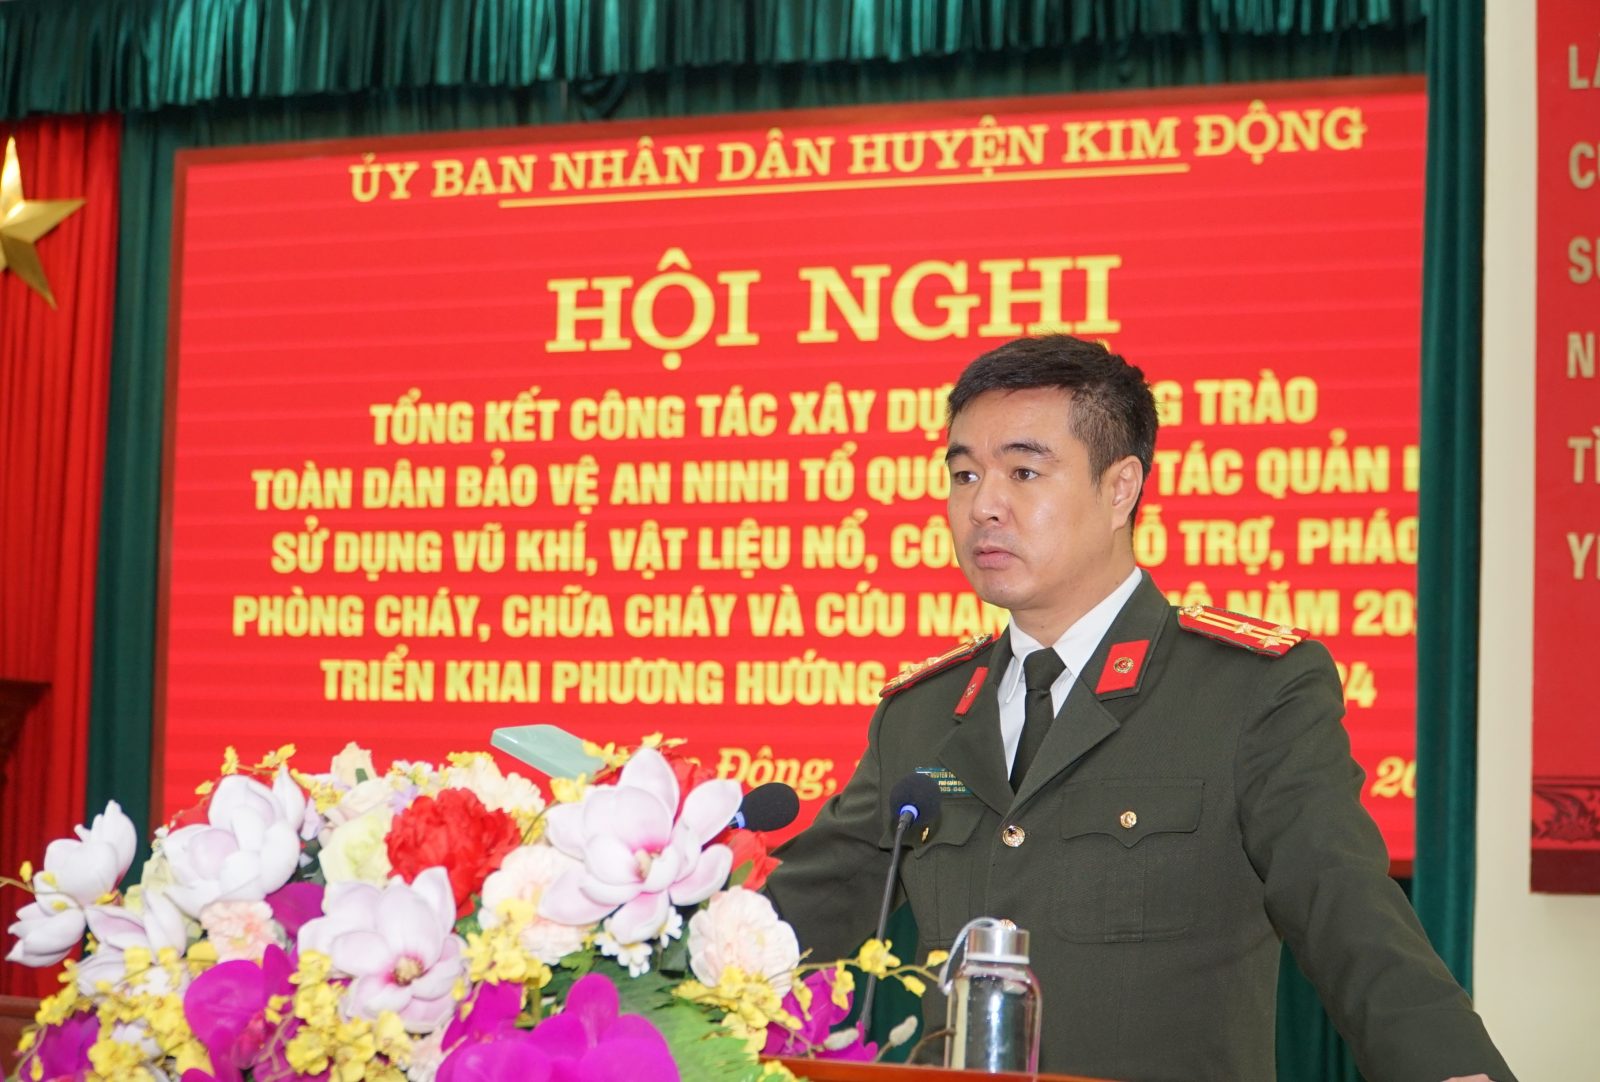 Huyện Kim Động tổ chức Hội nghị Tổng kết phong trào Toàn dân bảo vệ An ninh Tổ quốc; công tác quản lý, sử dụng vũ khí, vật liệu nổ, CCHT, pháo; PCCC và CNCH năm 2023, triển khai phương hướng, nhiệm vụ